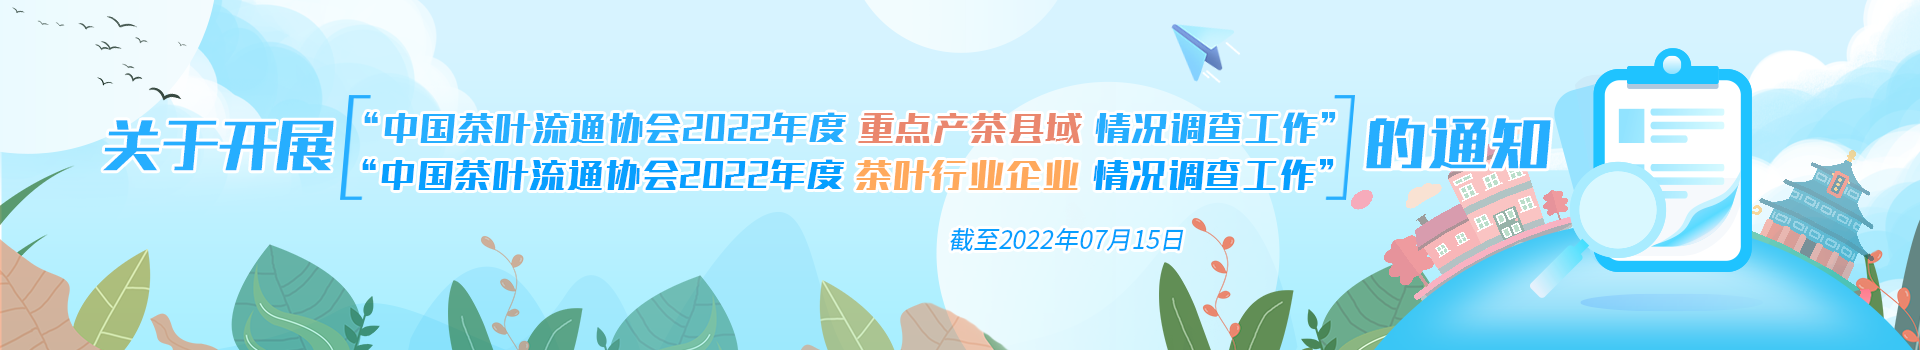 关于开展“中国茶叶流通协会2022年度重点产茶县域情况调查工作/中国茶叶流通协会2022年度茶叶行业企业情况调查工作”的通知